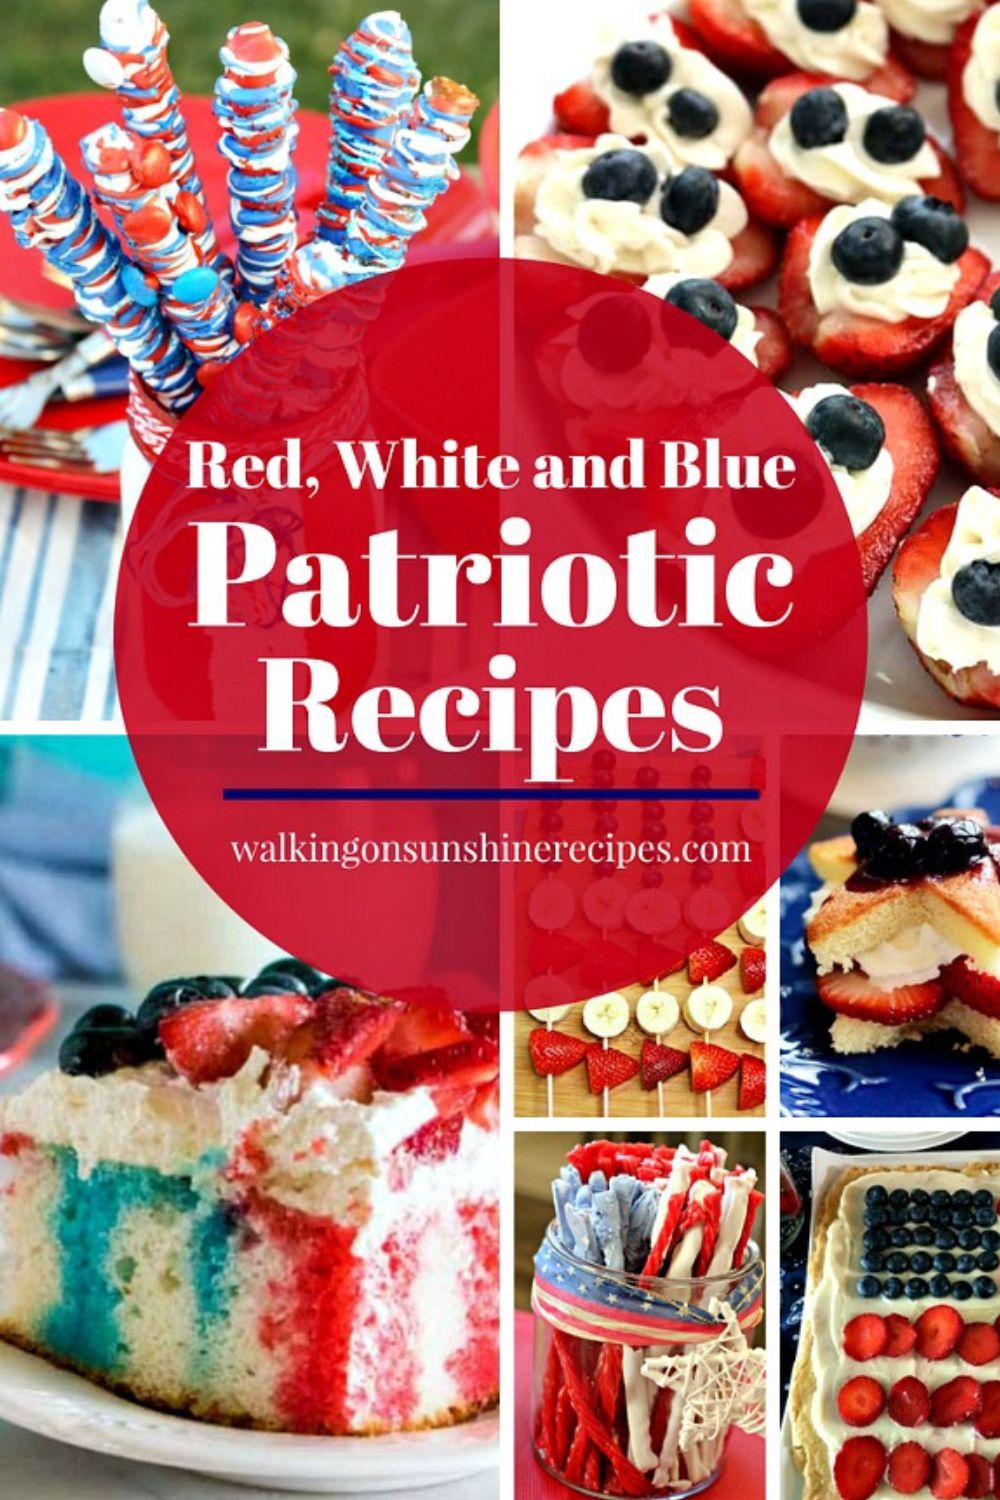 patriotic recipes